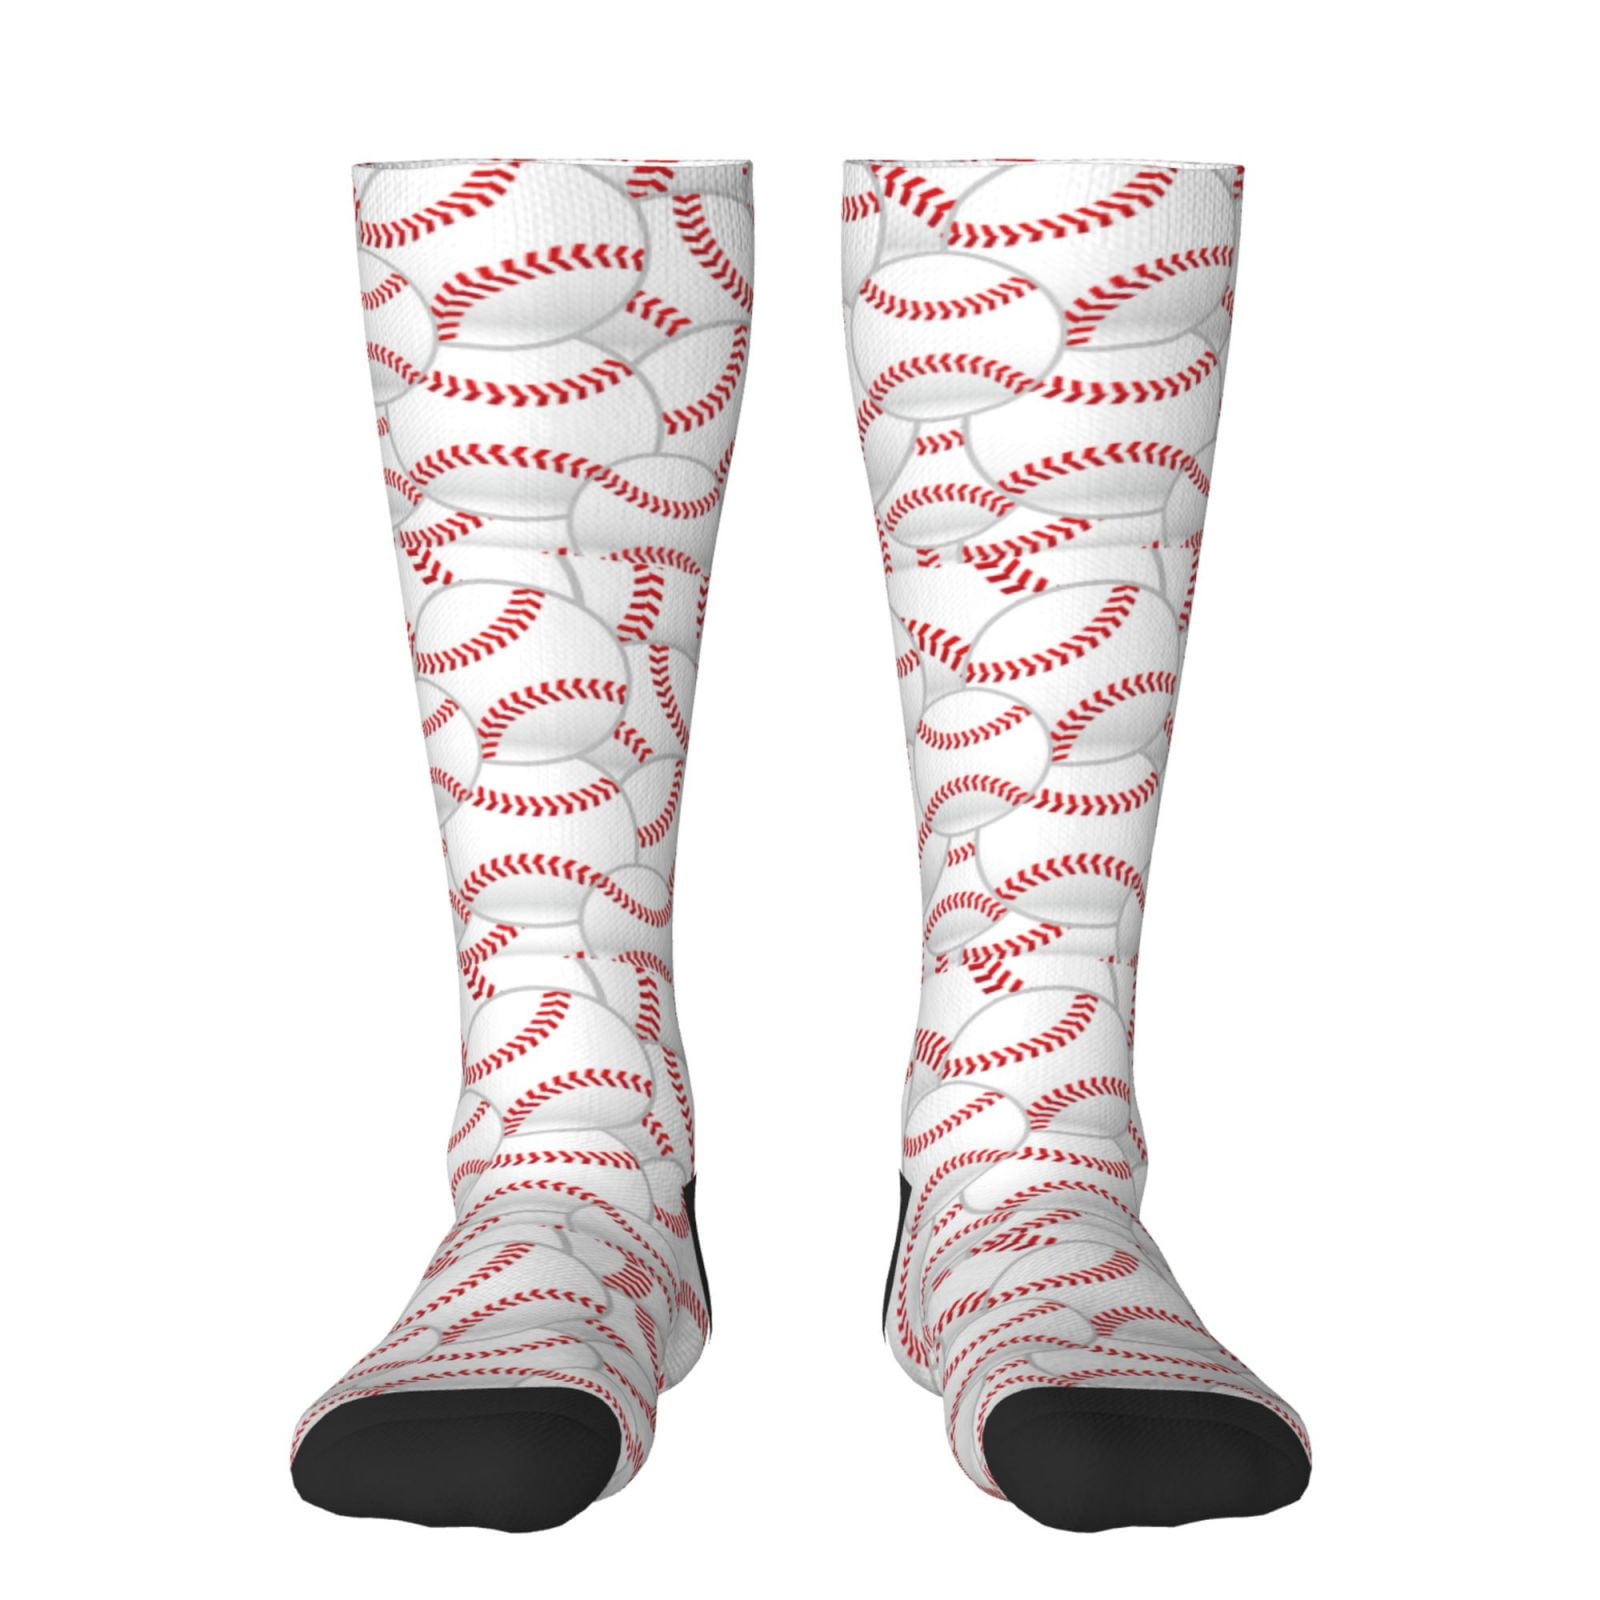 Fotbe Baseballs print Women's Men's Novelty Crew Socks Cotton Socks ...